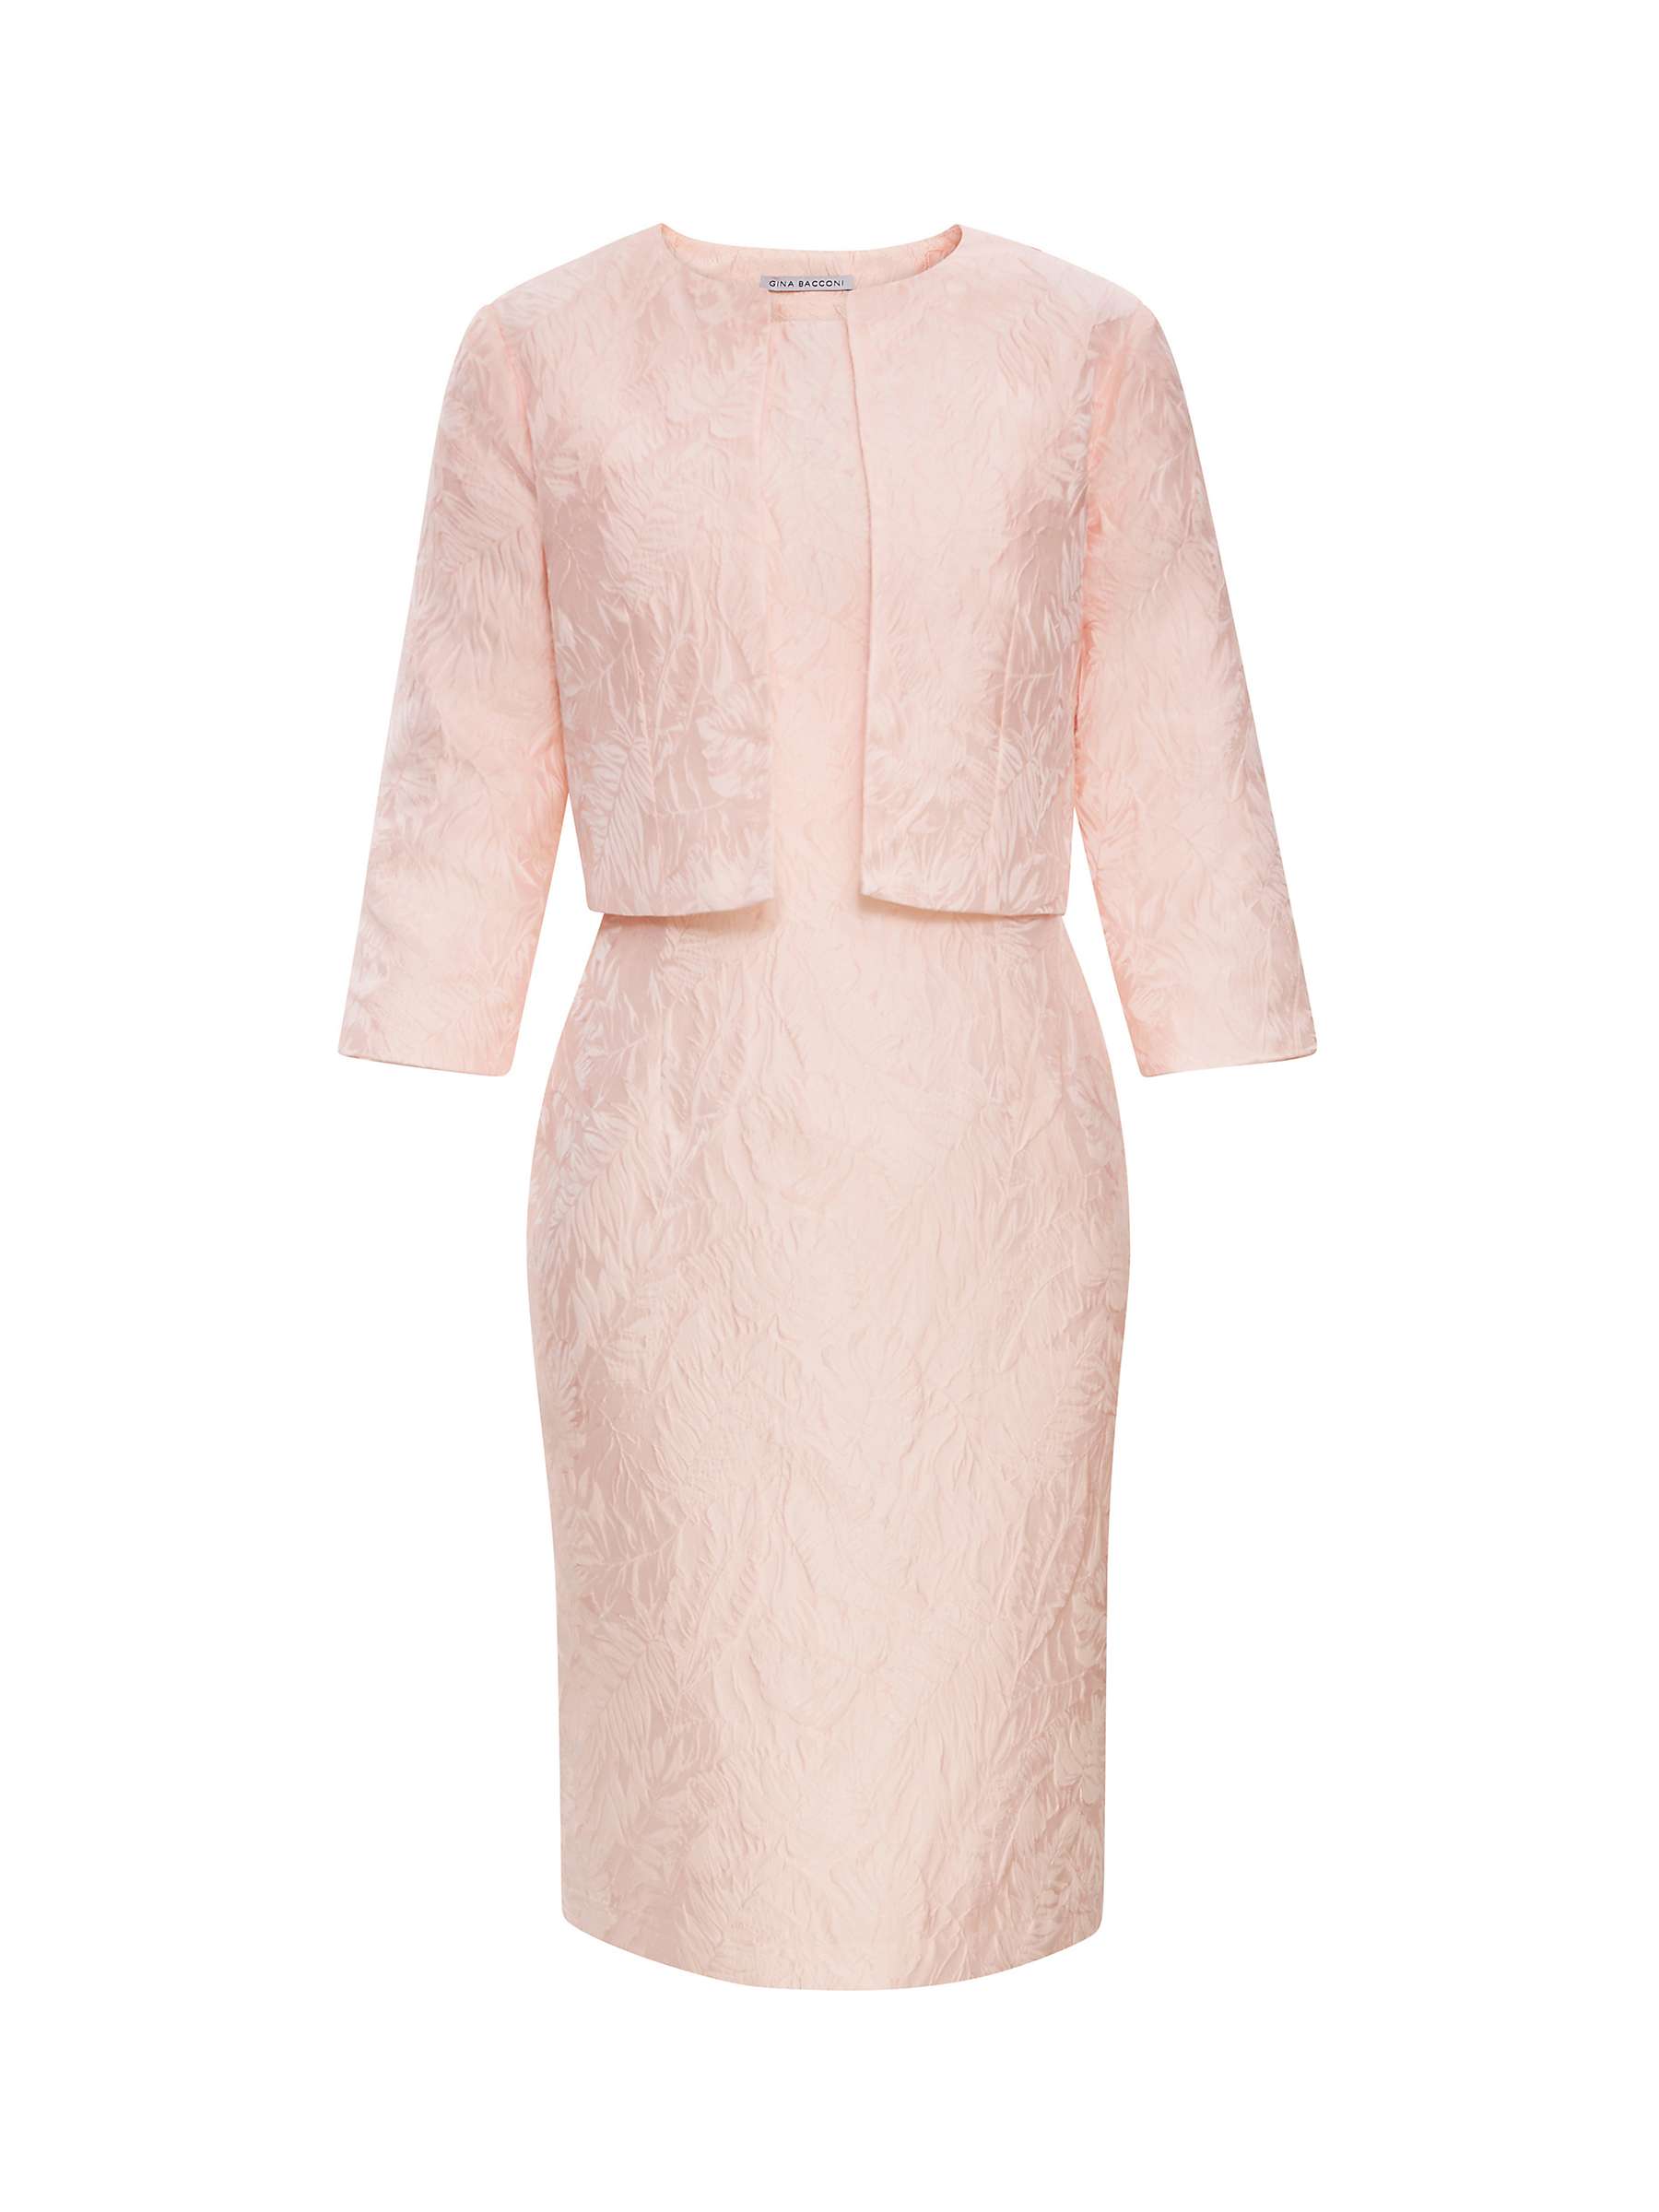 Buy Gina Bacconi Sofya Jacquard Sheath Dress and Bolero Jacket, Pink Online at johnlewis.com